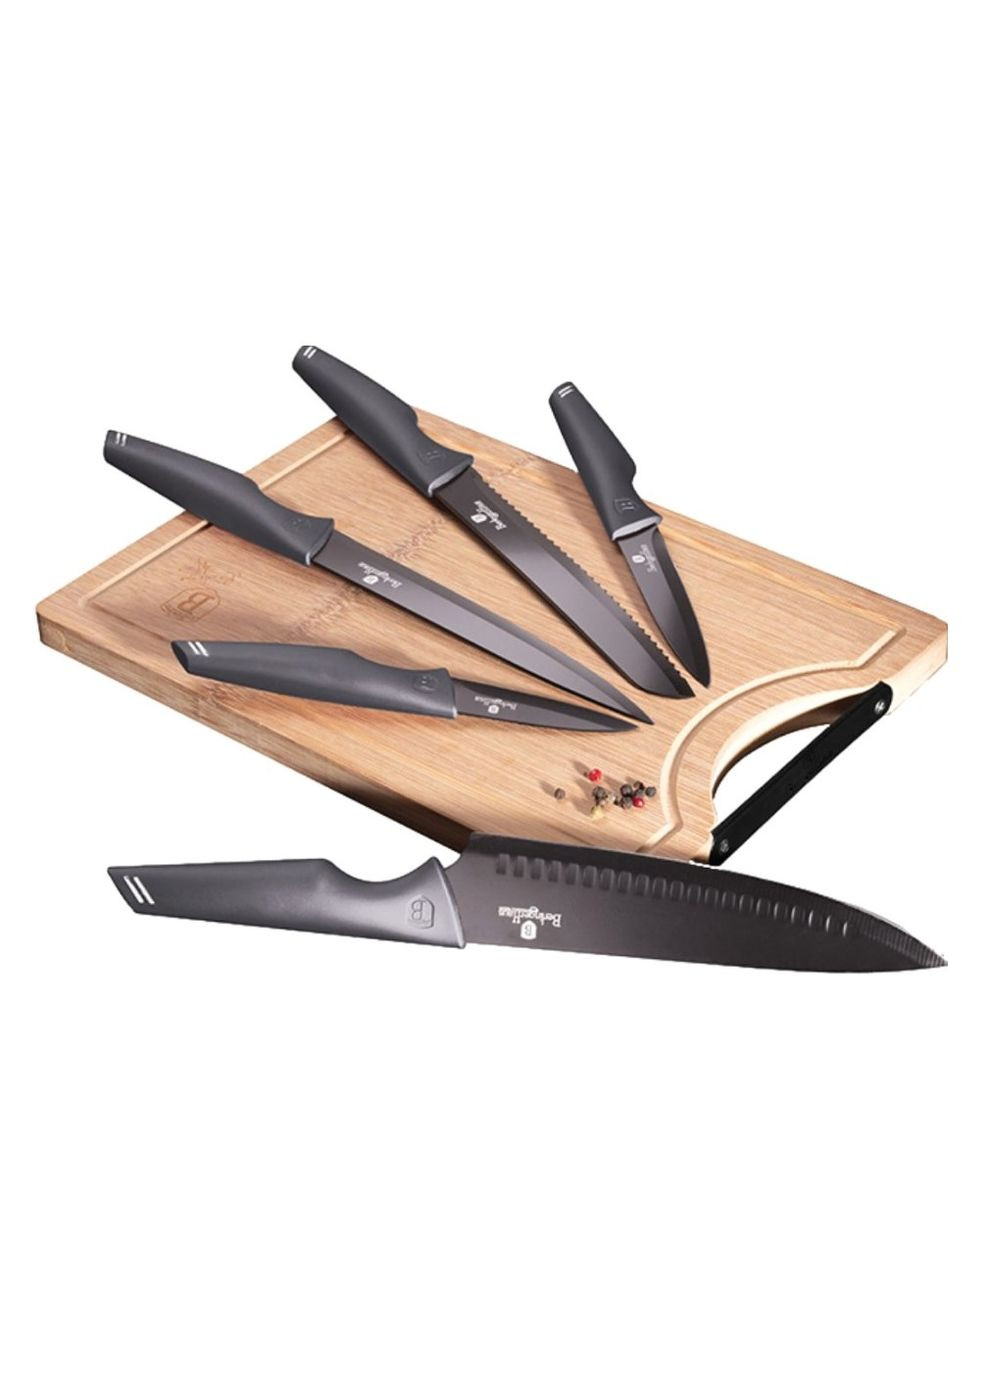 Набор ножей Metallic Line Carbon Pro Edition с доской 6 предметов Berlinger Haus чёрные,